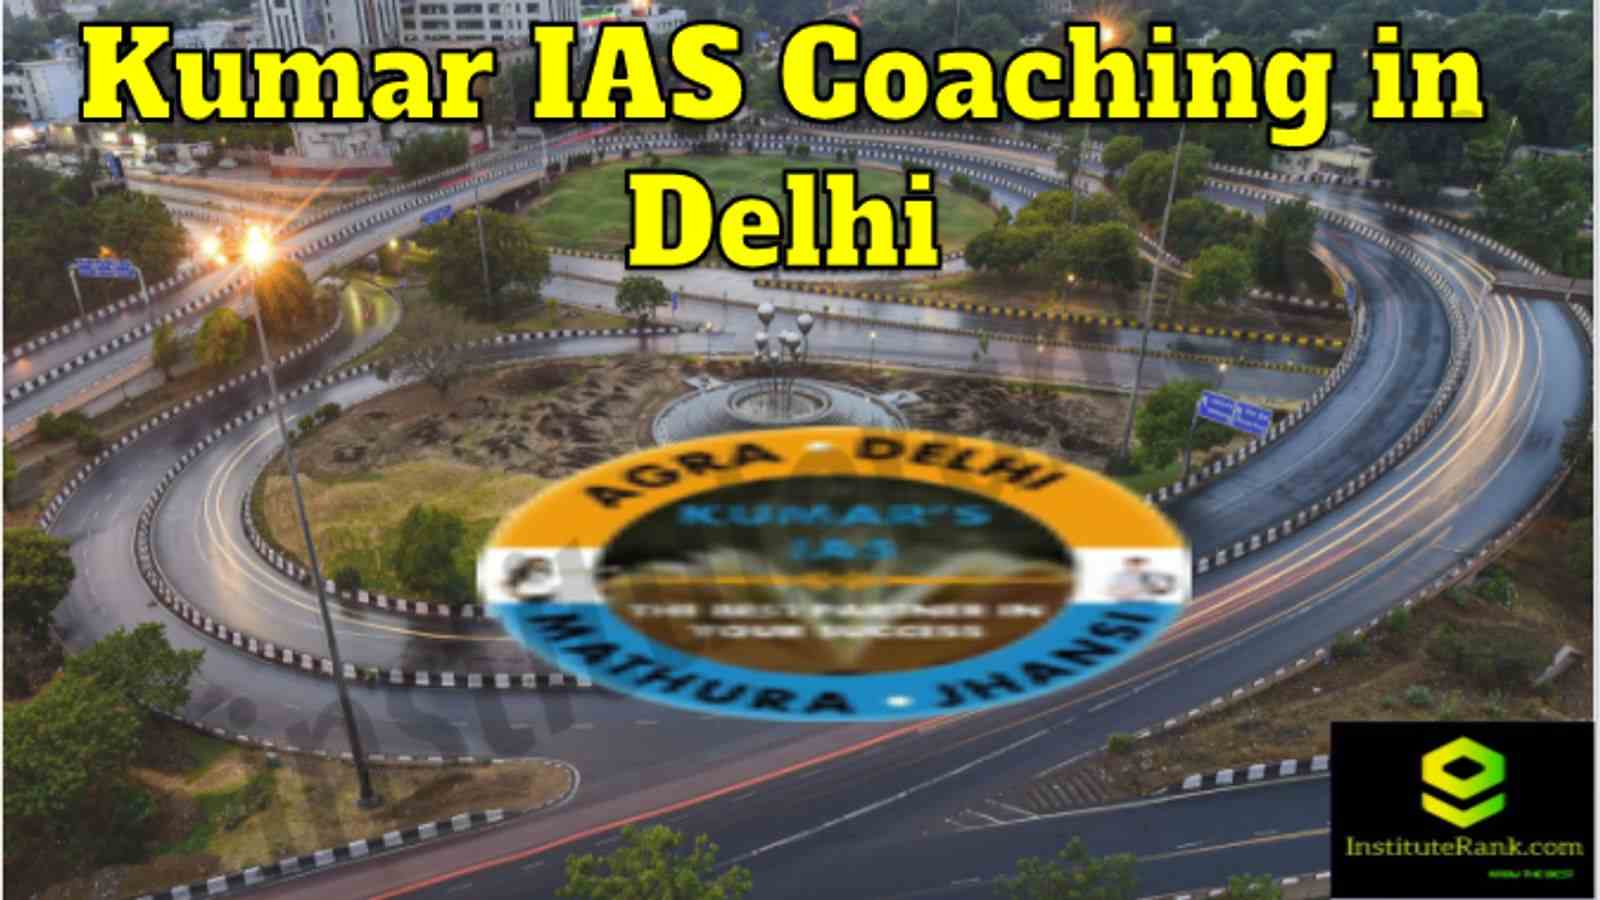 Kumar IAS Coaching in Delhi